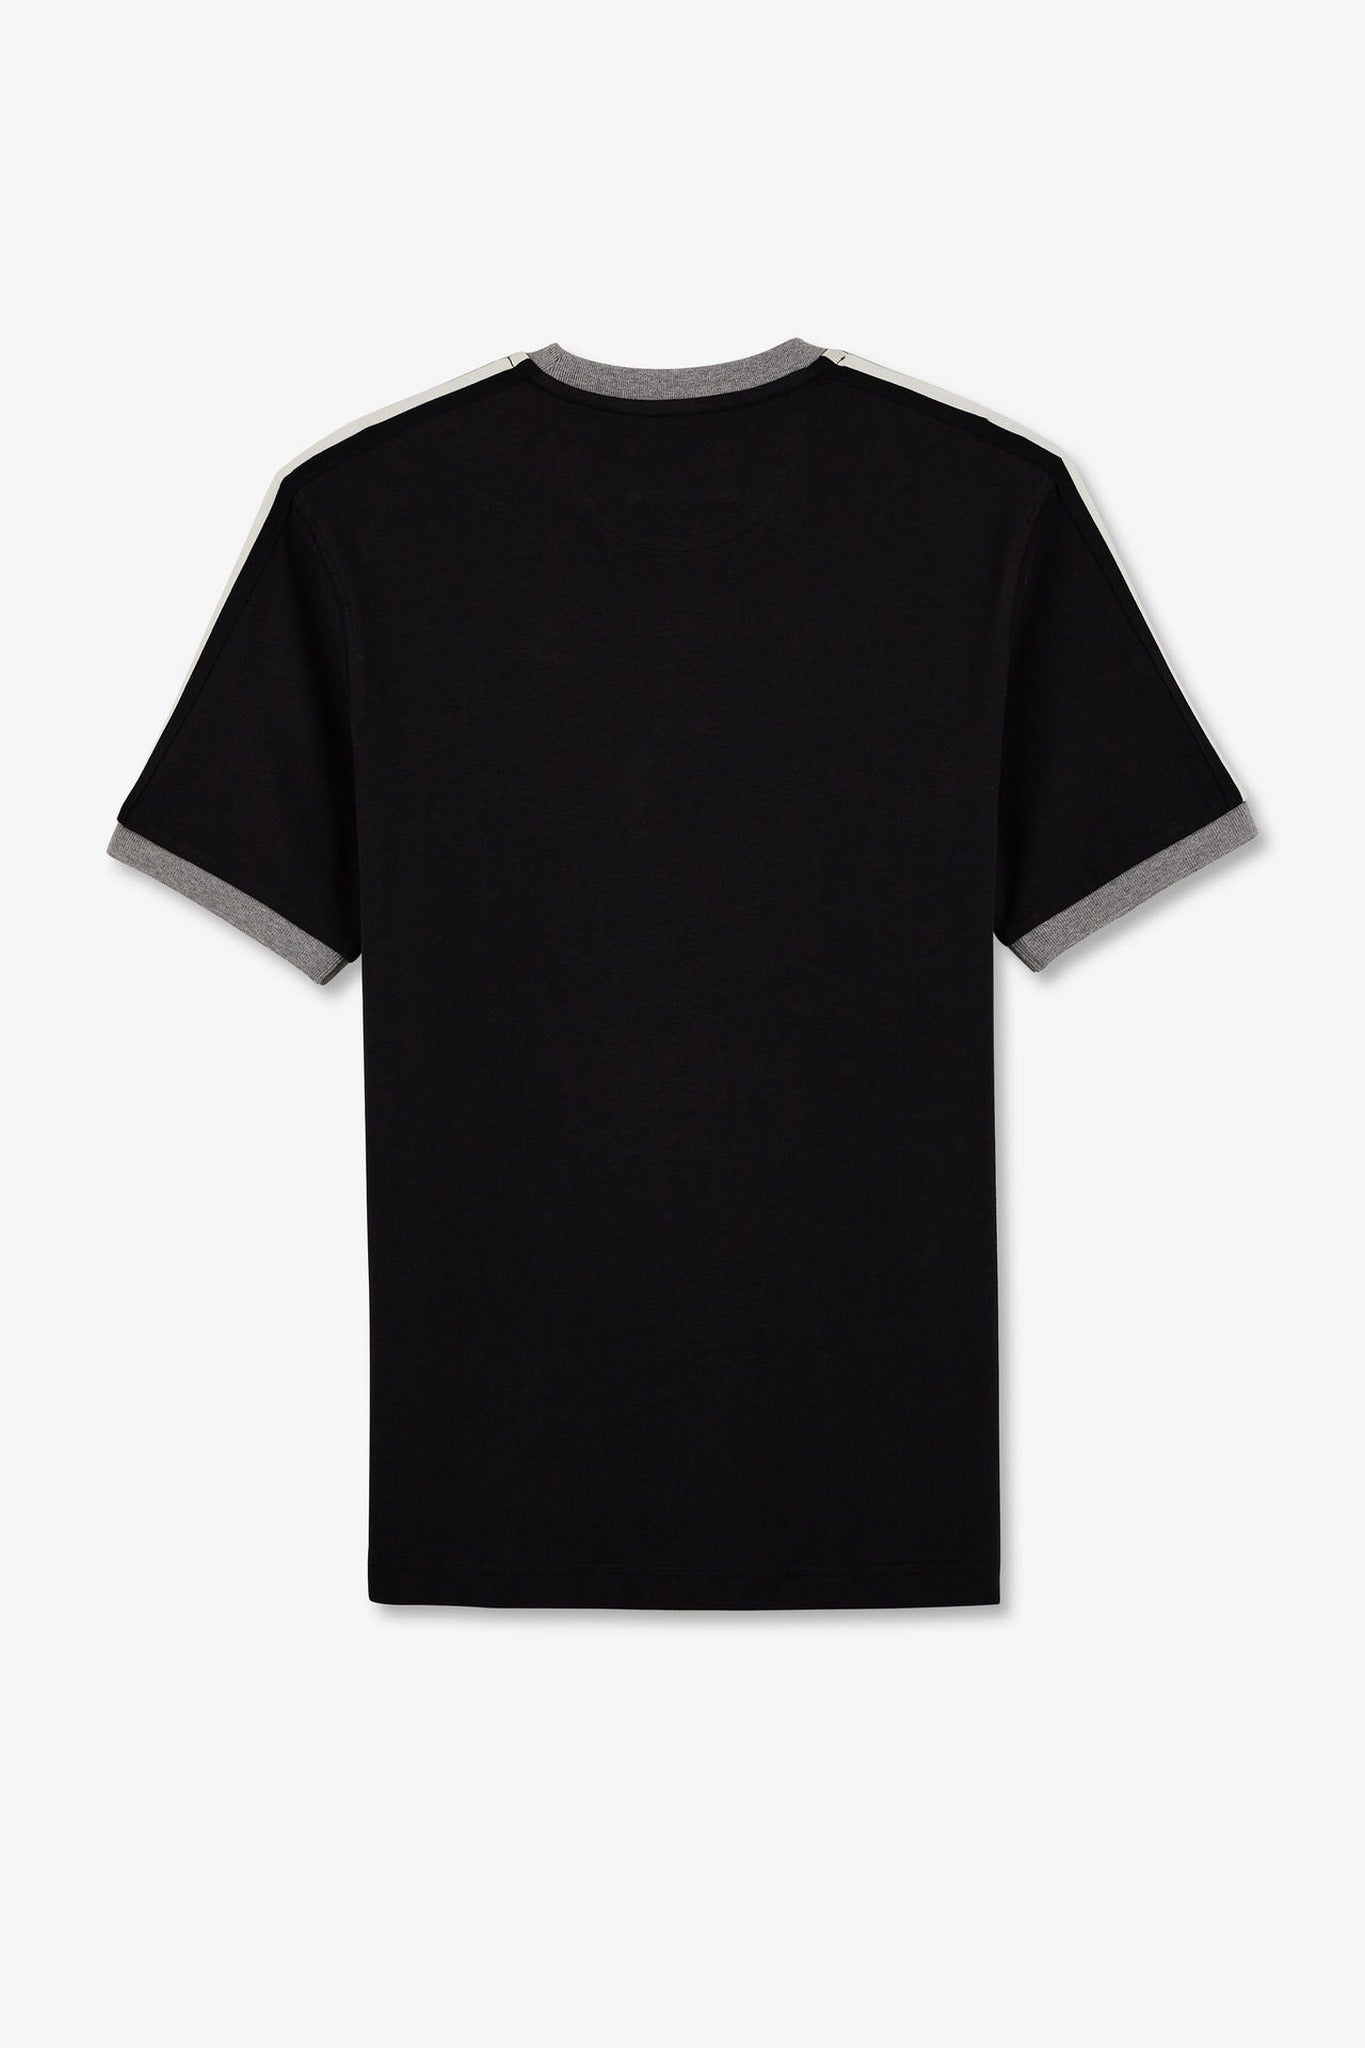 T-shirt noir inscription Eden Park New Zealand - Image 4